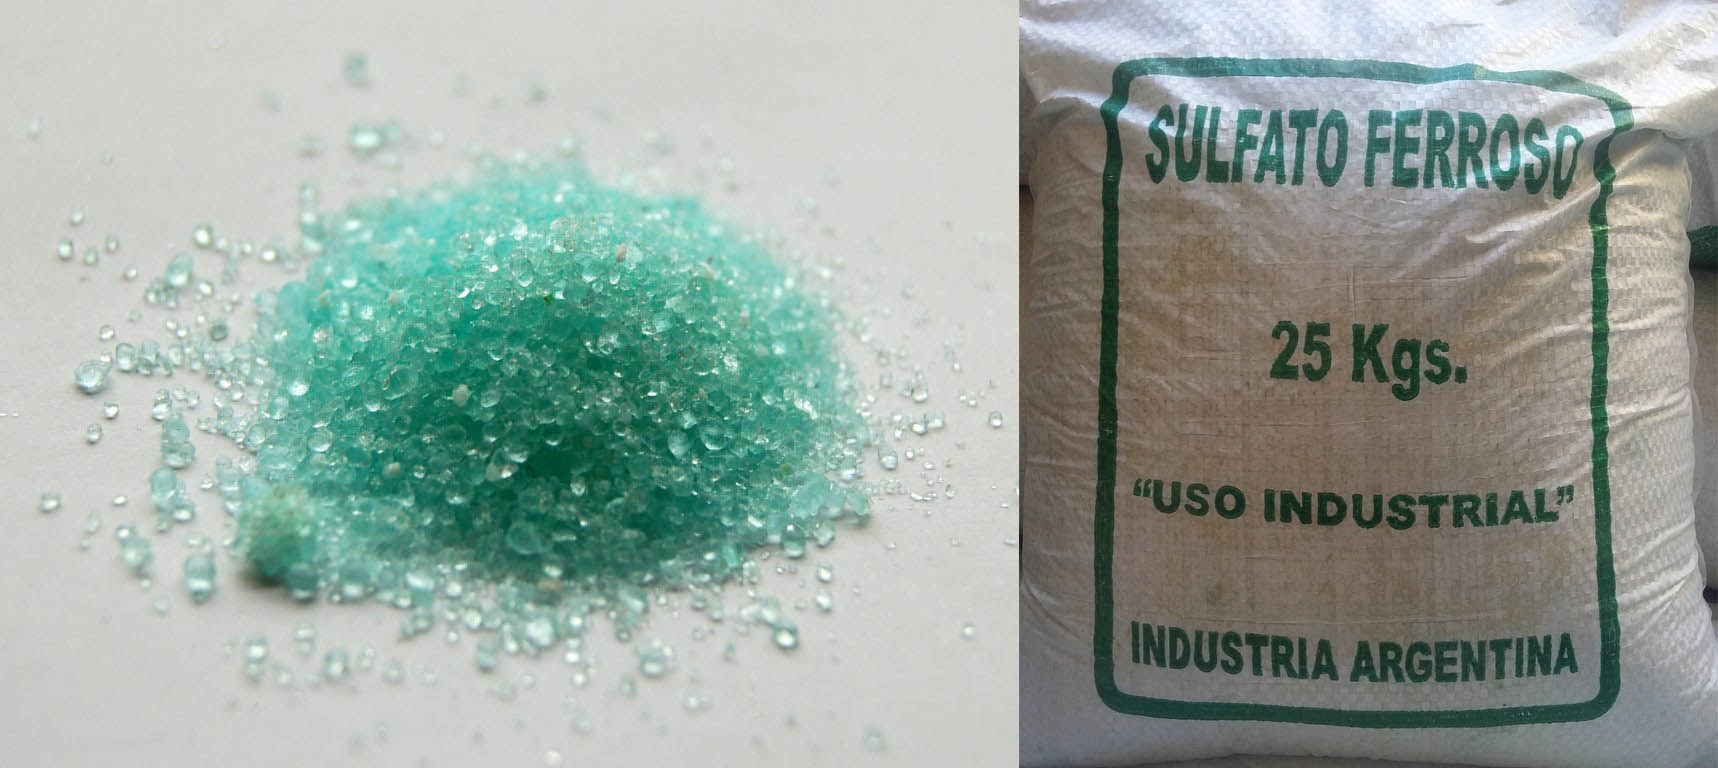 Sulfato de hierro: Qué es y sus aplicaciones en la industria